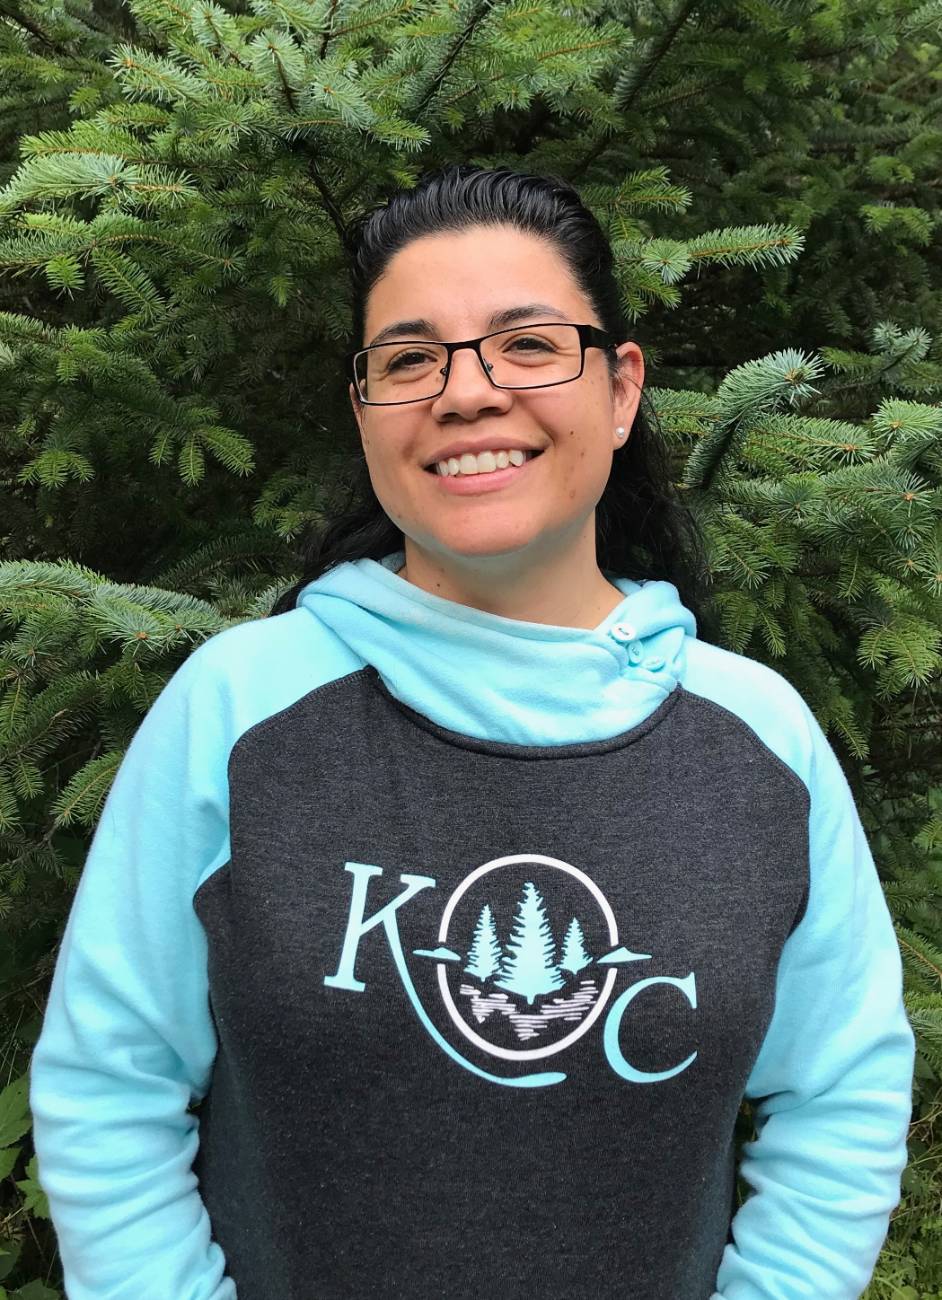 Nancy Castro wearing a Kodiak College hoodie